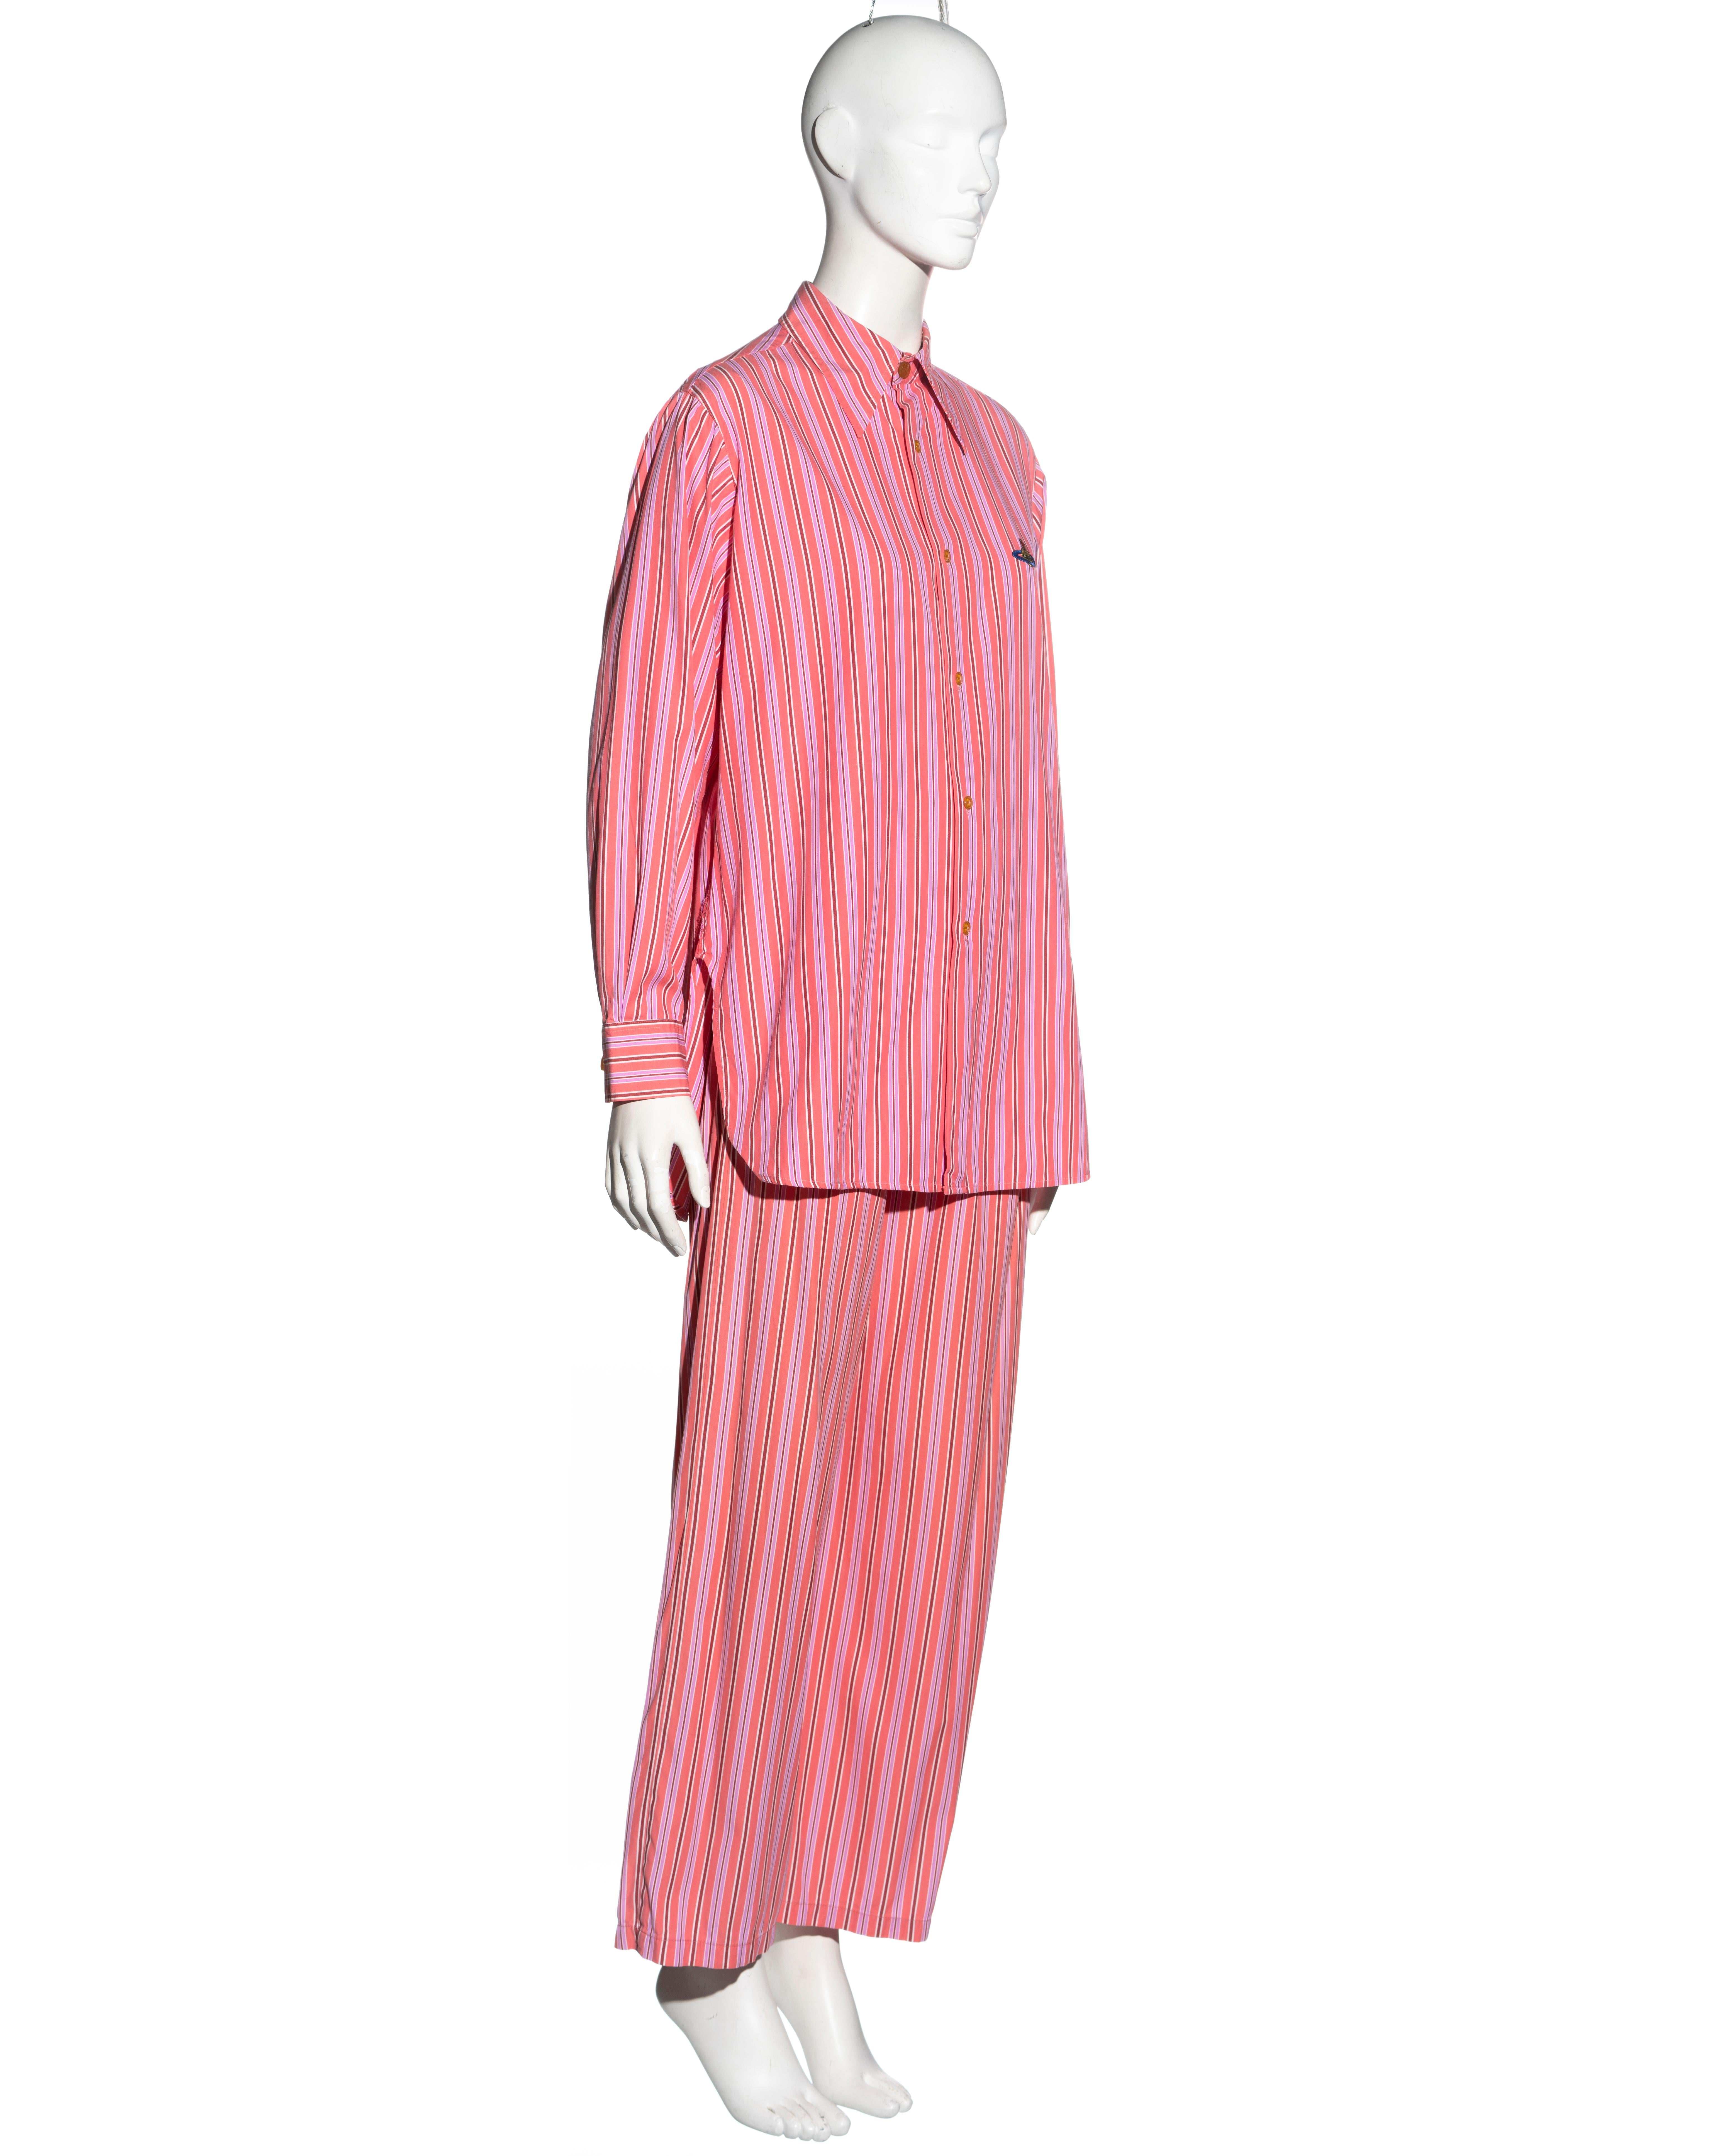 Vivienne Westwood pink striped cotton 3-piece suit, ss 1993 For Sale 7